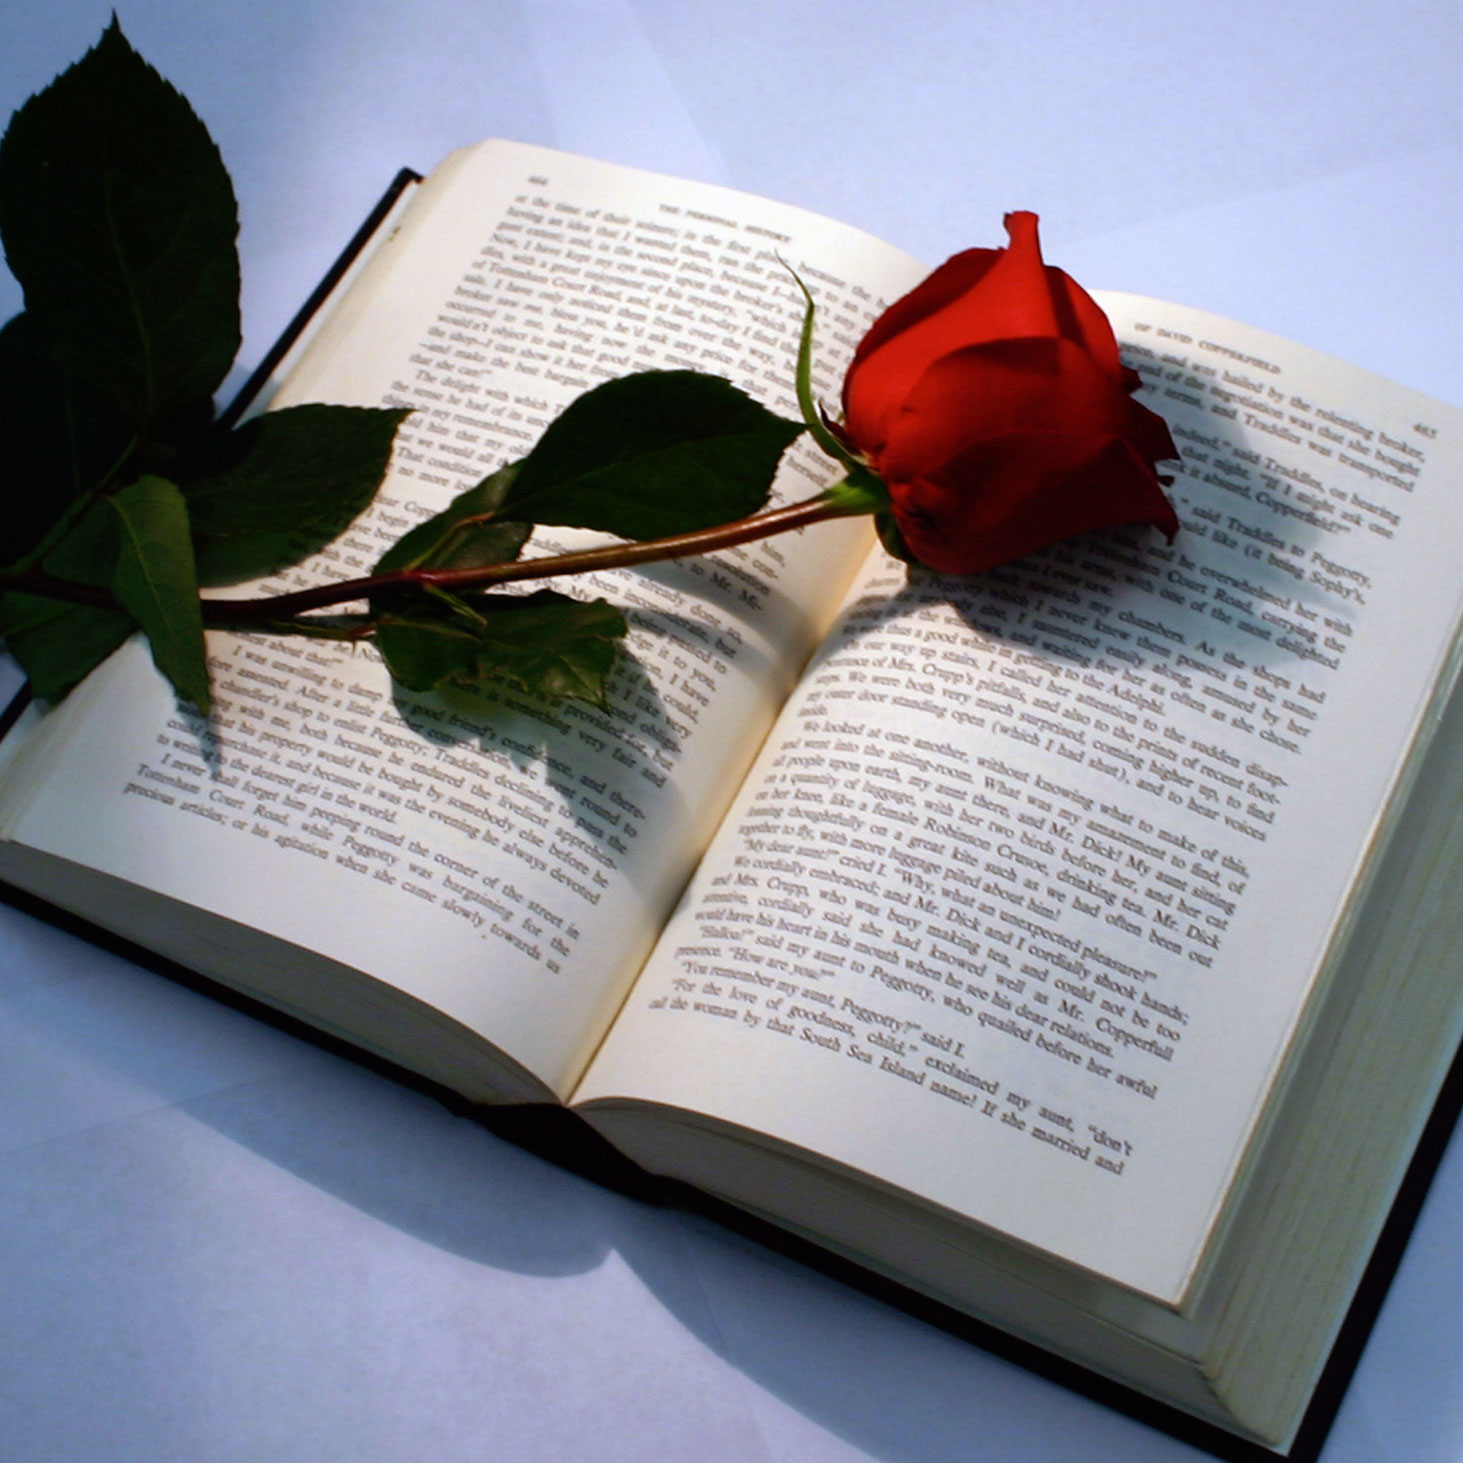 Проза. Роза на книге. Раскрытая книга. Люблю книги. Раскрытые книги с цветами.